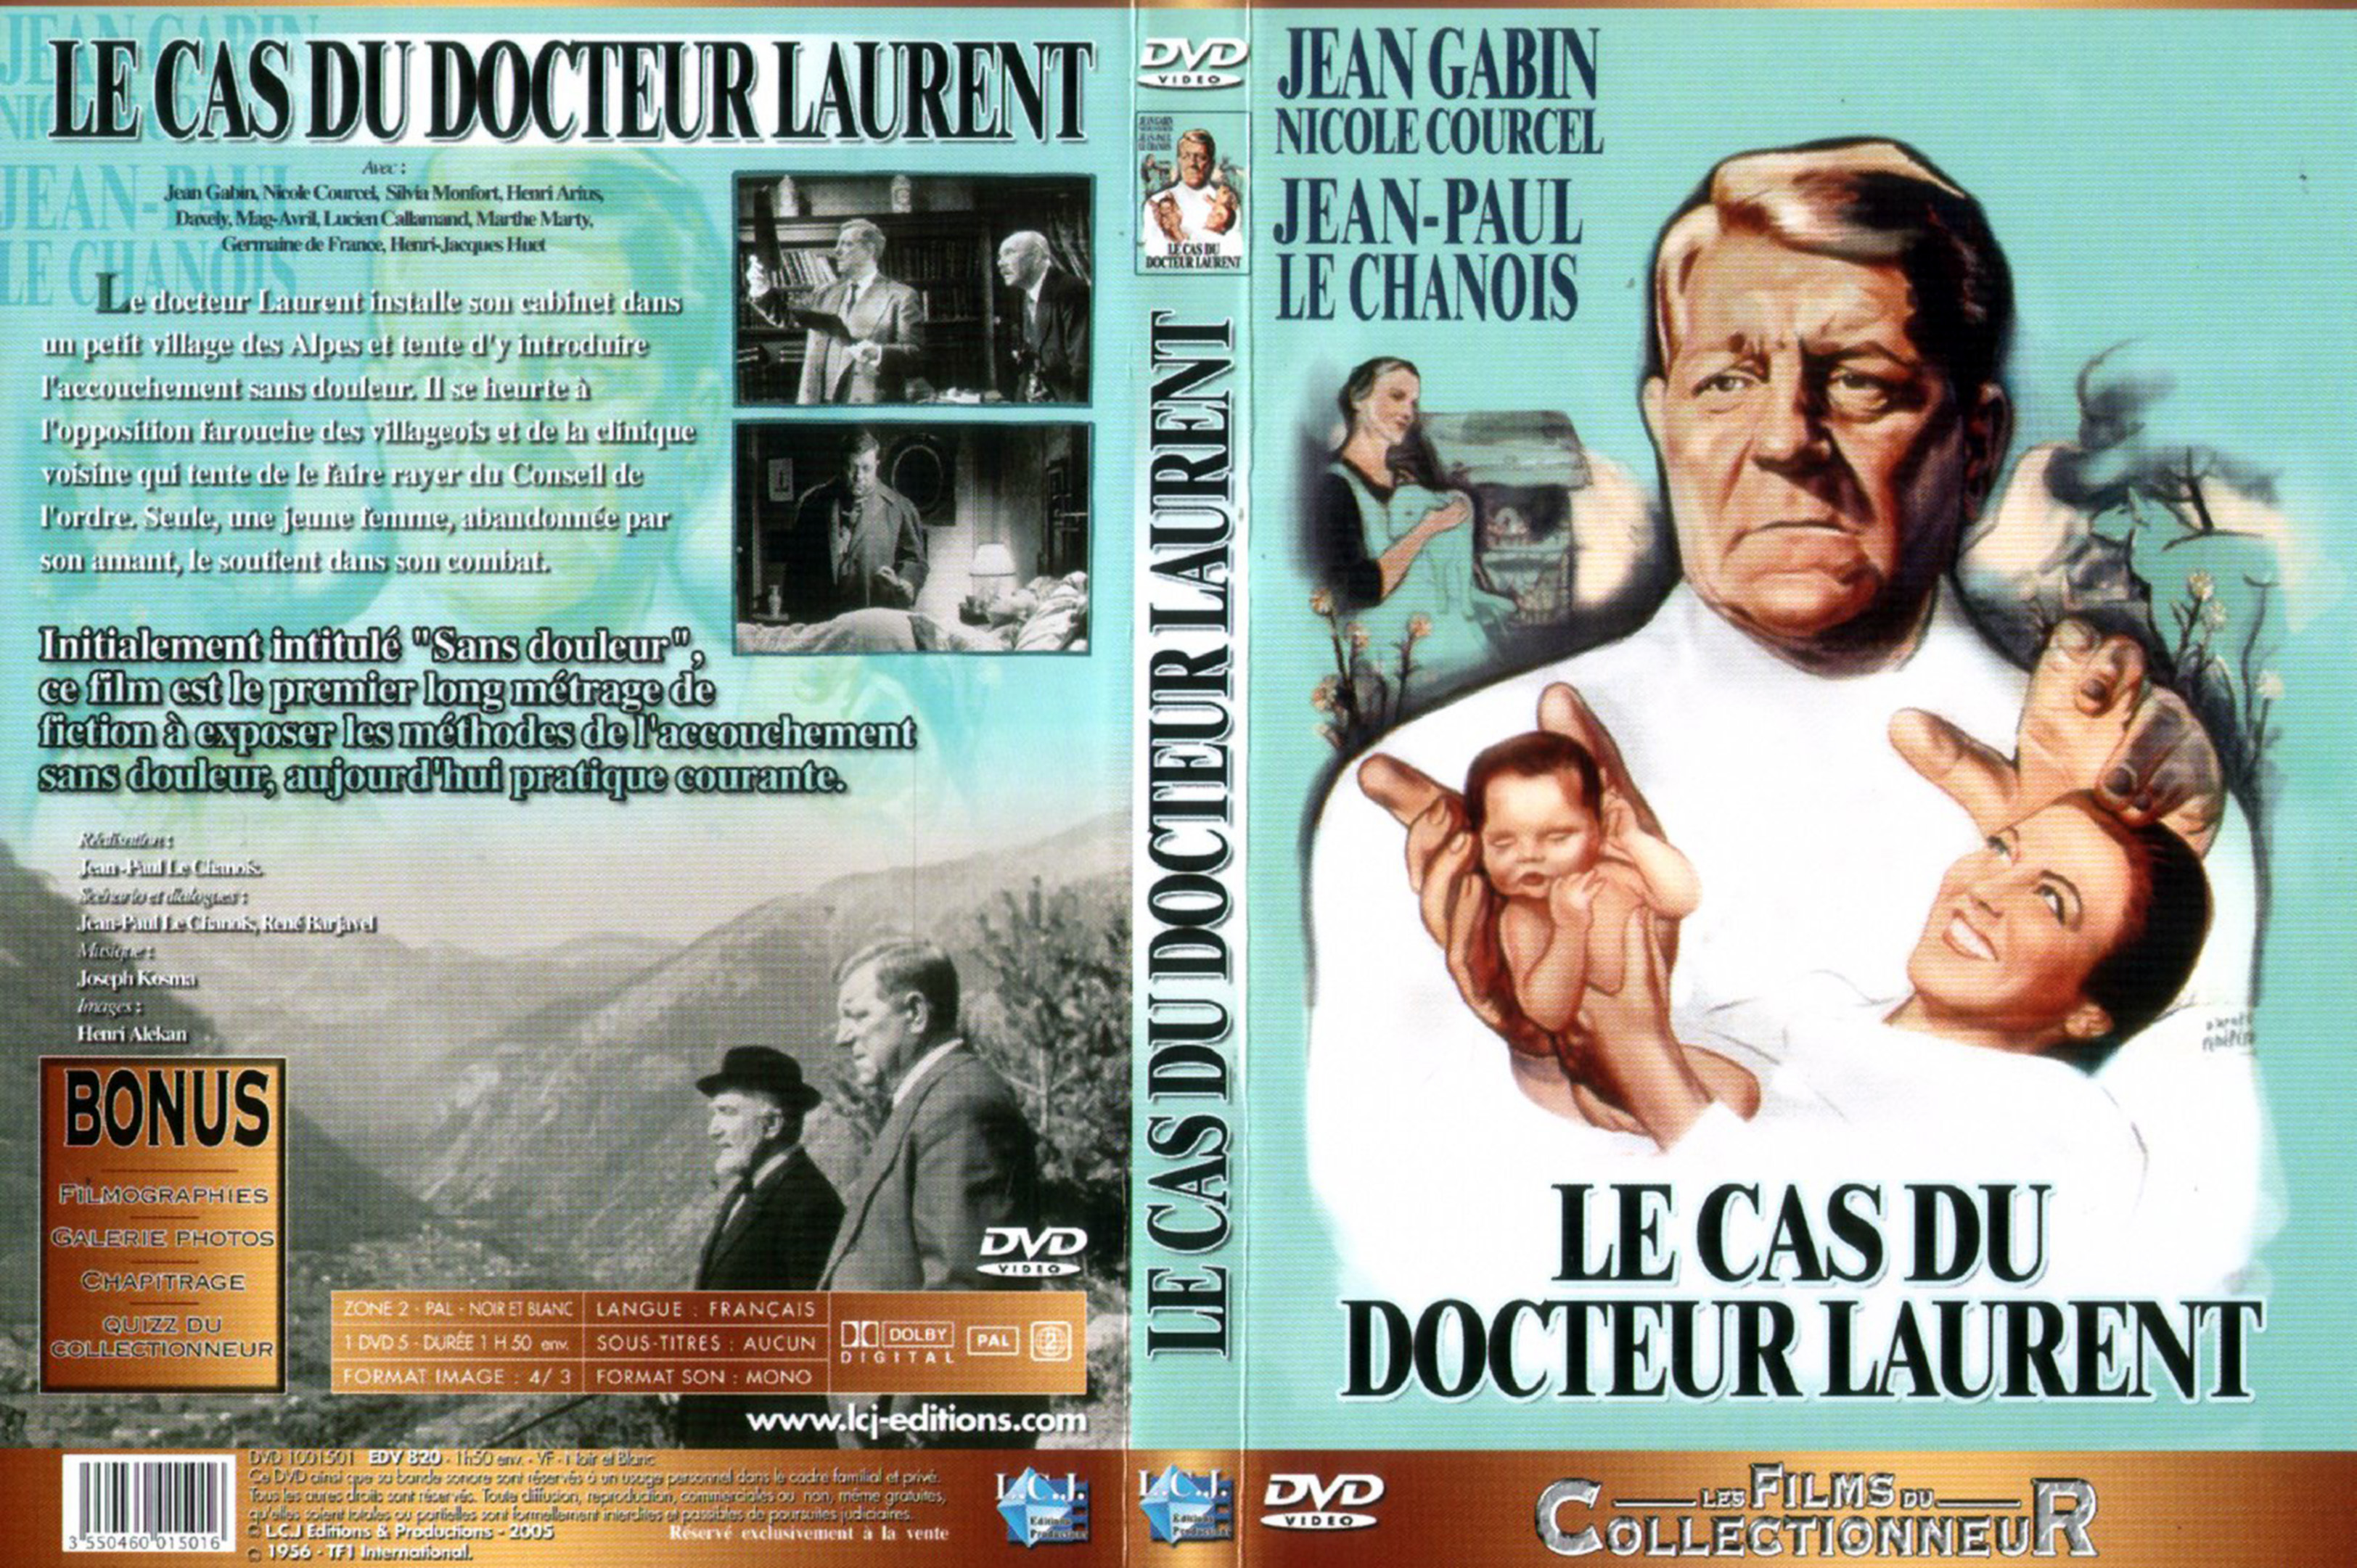 Jaquette DVD Le cas du Docteur Laurent